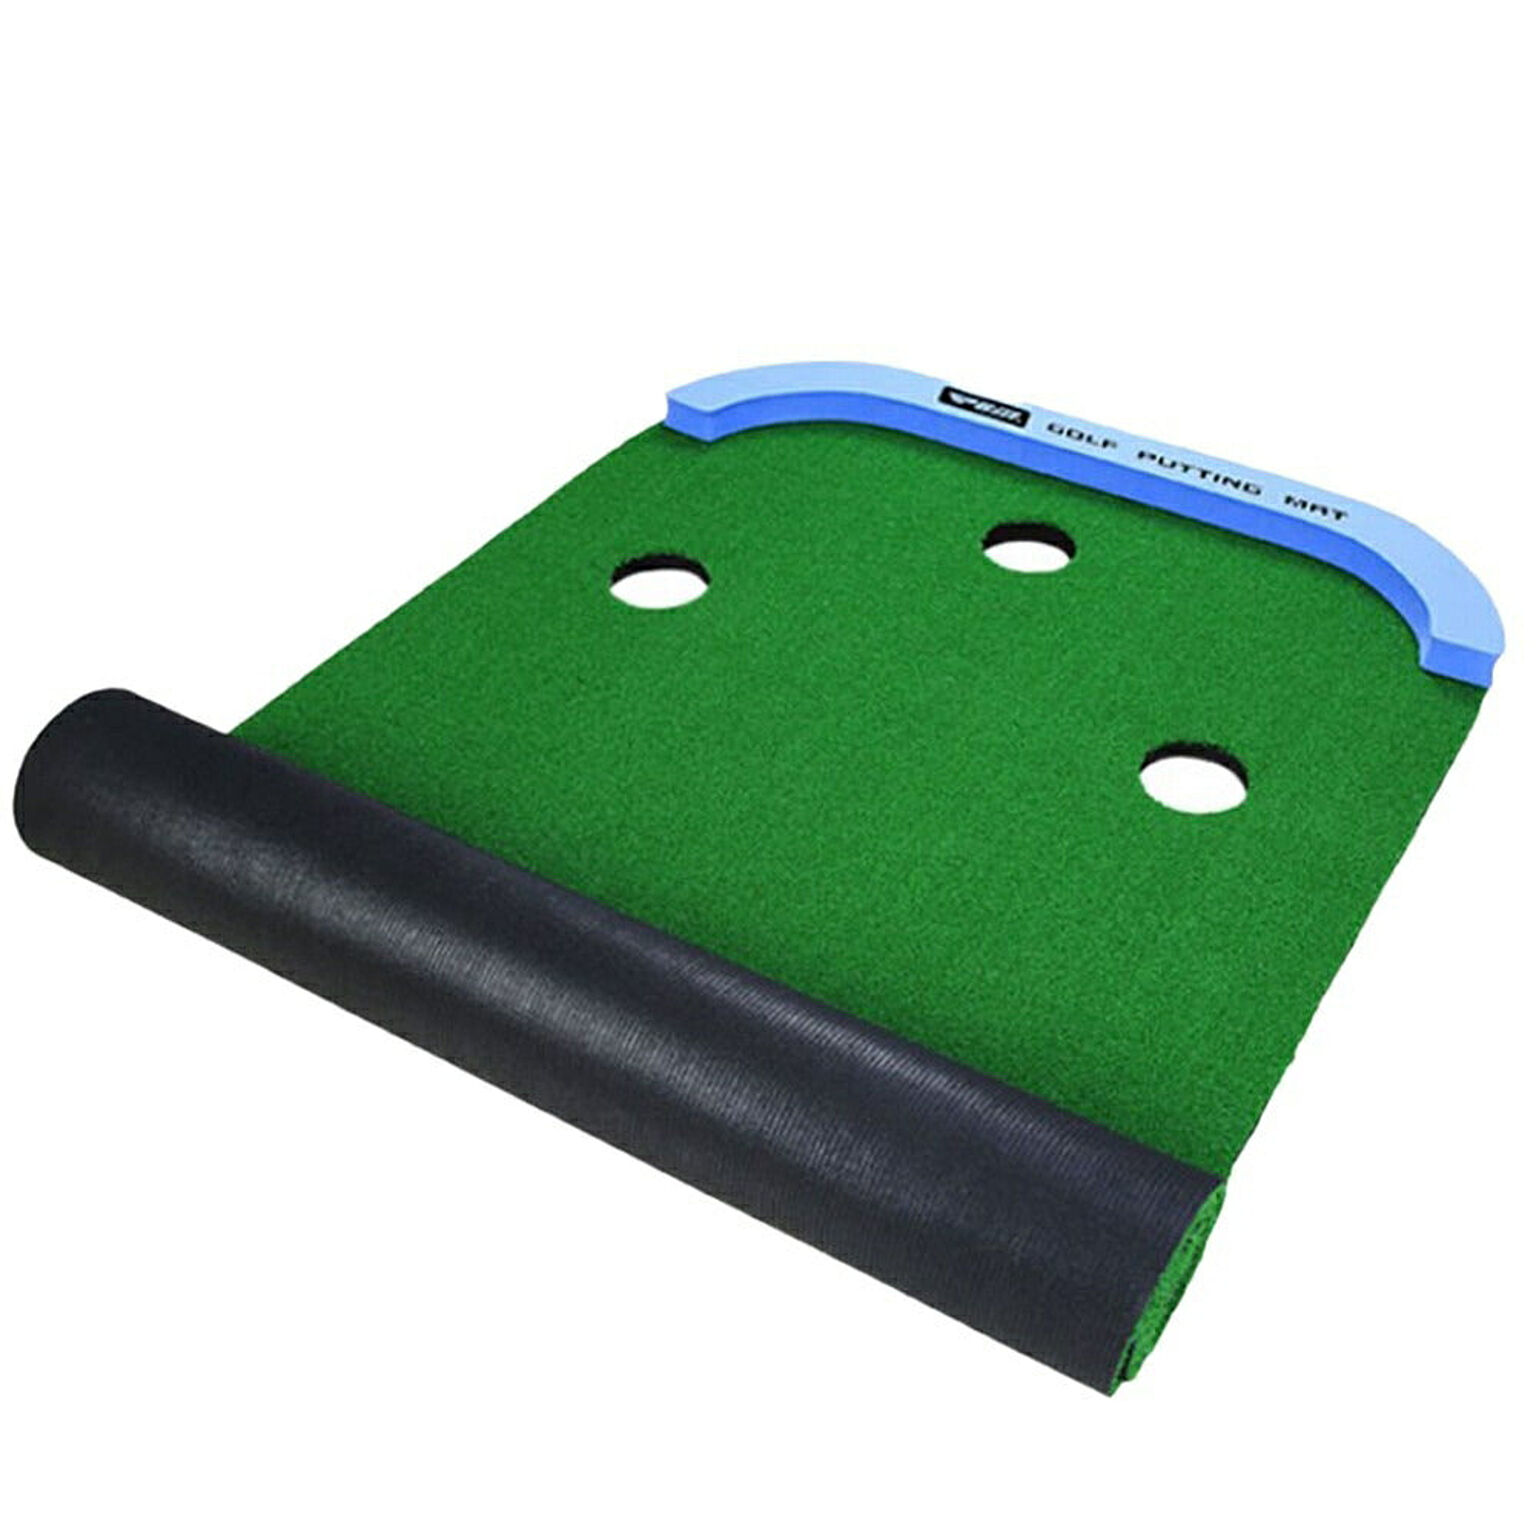 ゴルフ パターマット 3m 大型 パター練習器具 パター練習マット パター